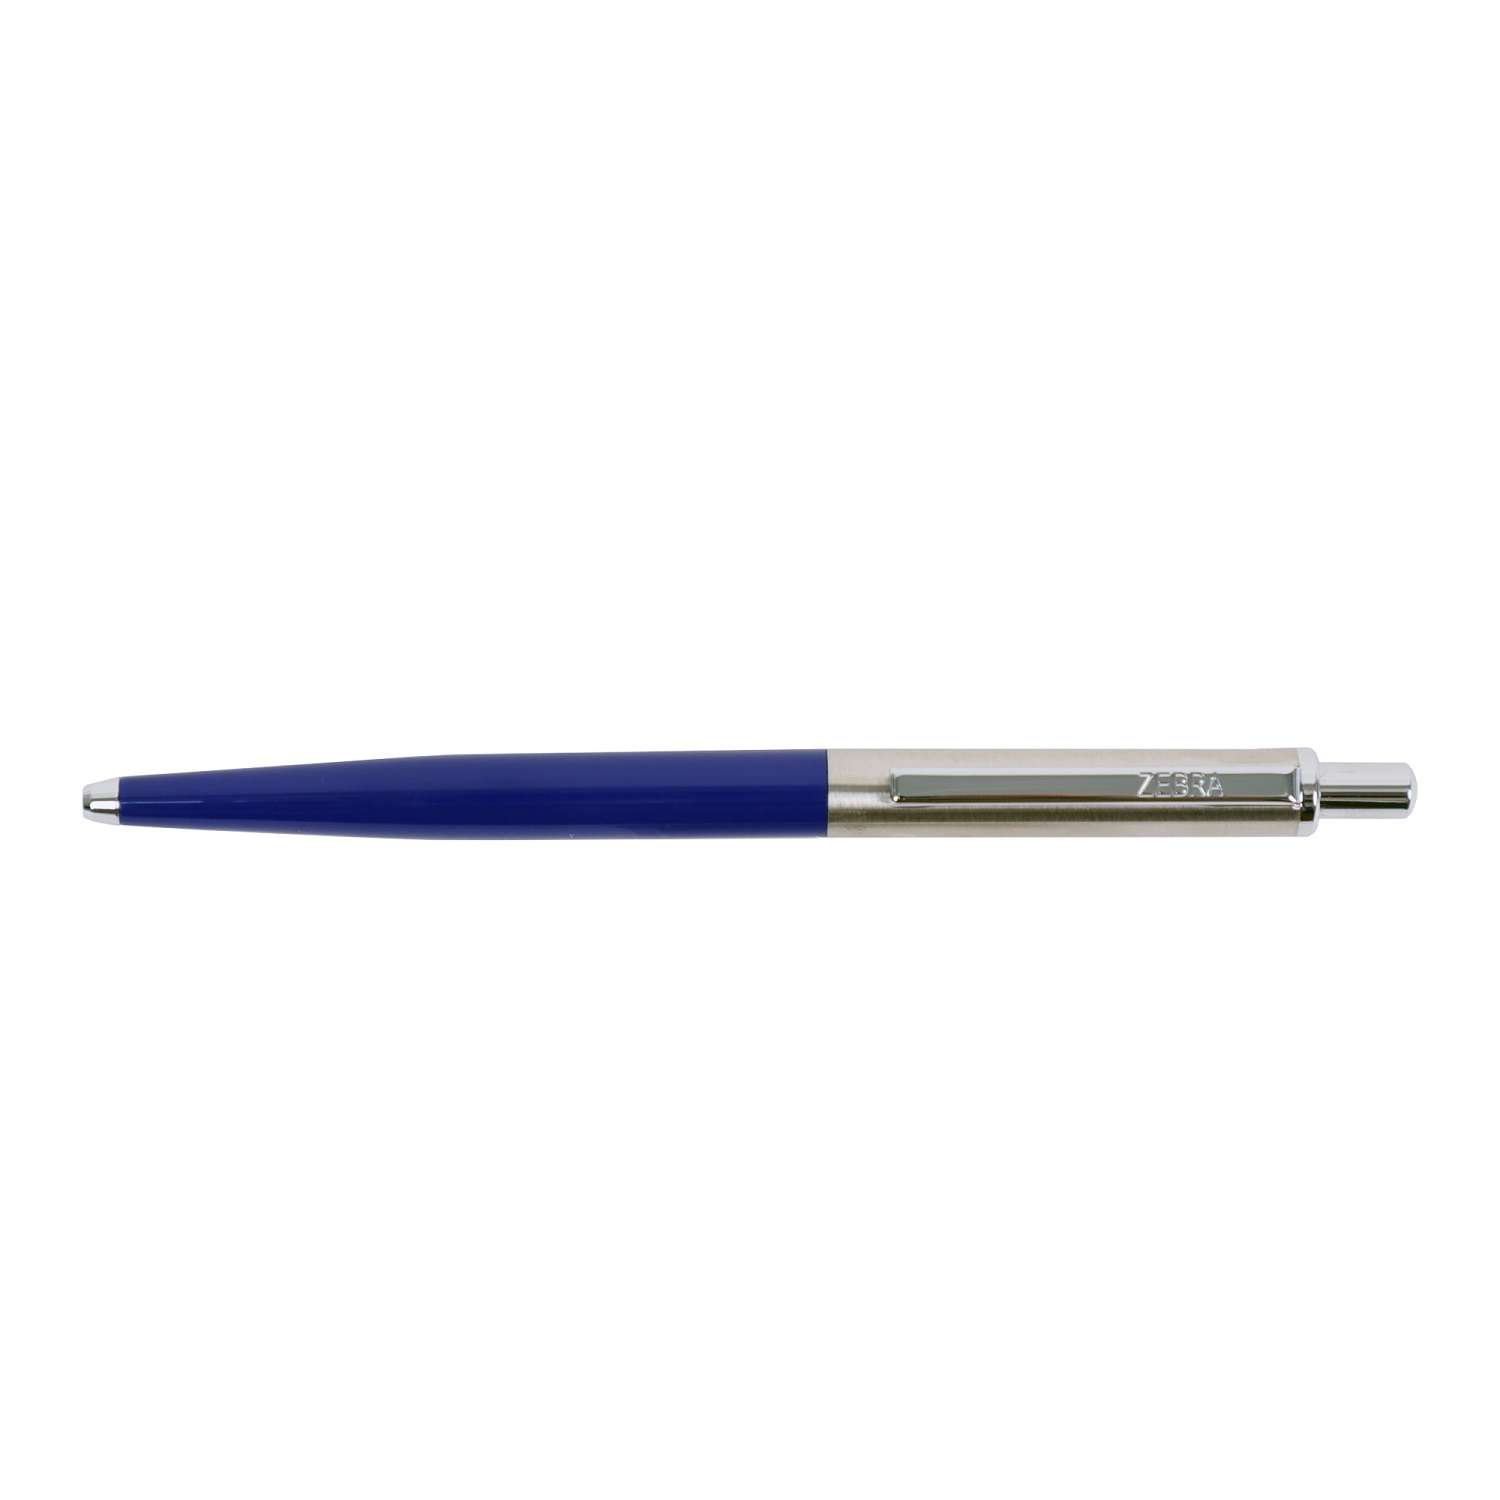 Ручка шариковая ZEBRA 901 автоматическаяическая Синяя 1215674 - фото 1